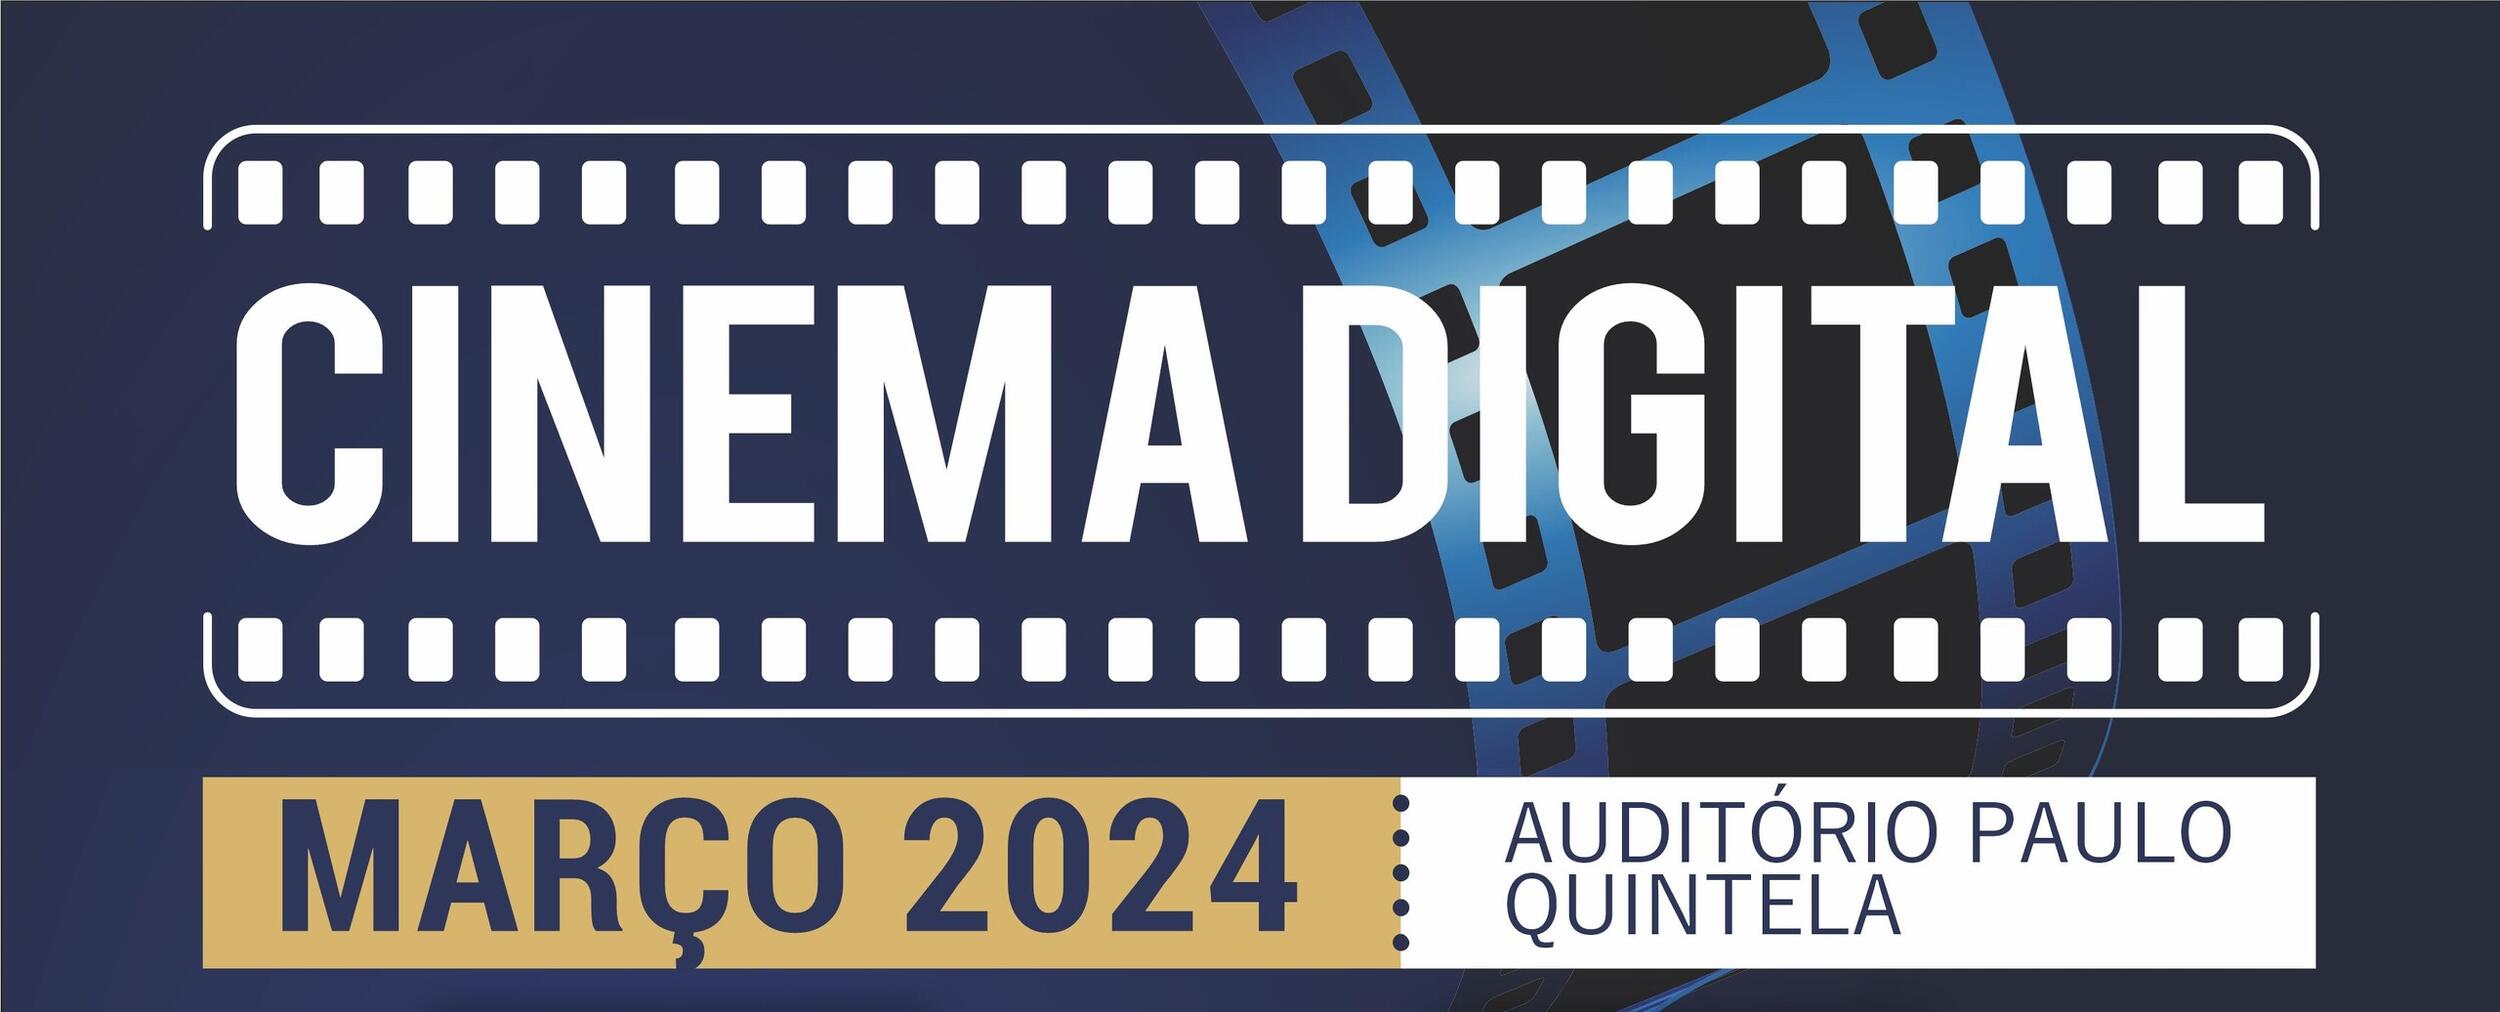 Cinema Digital - Março 2024